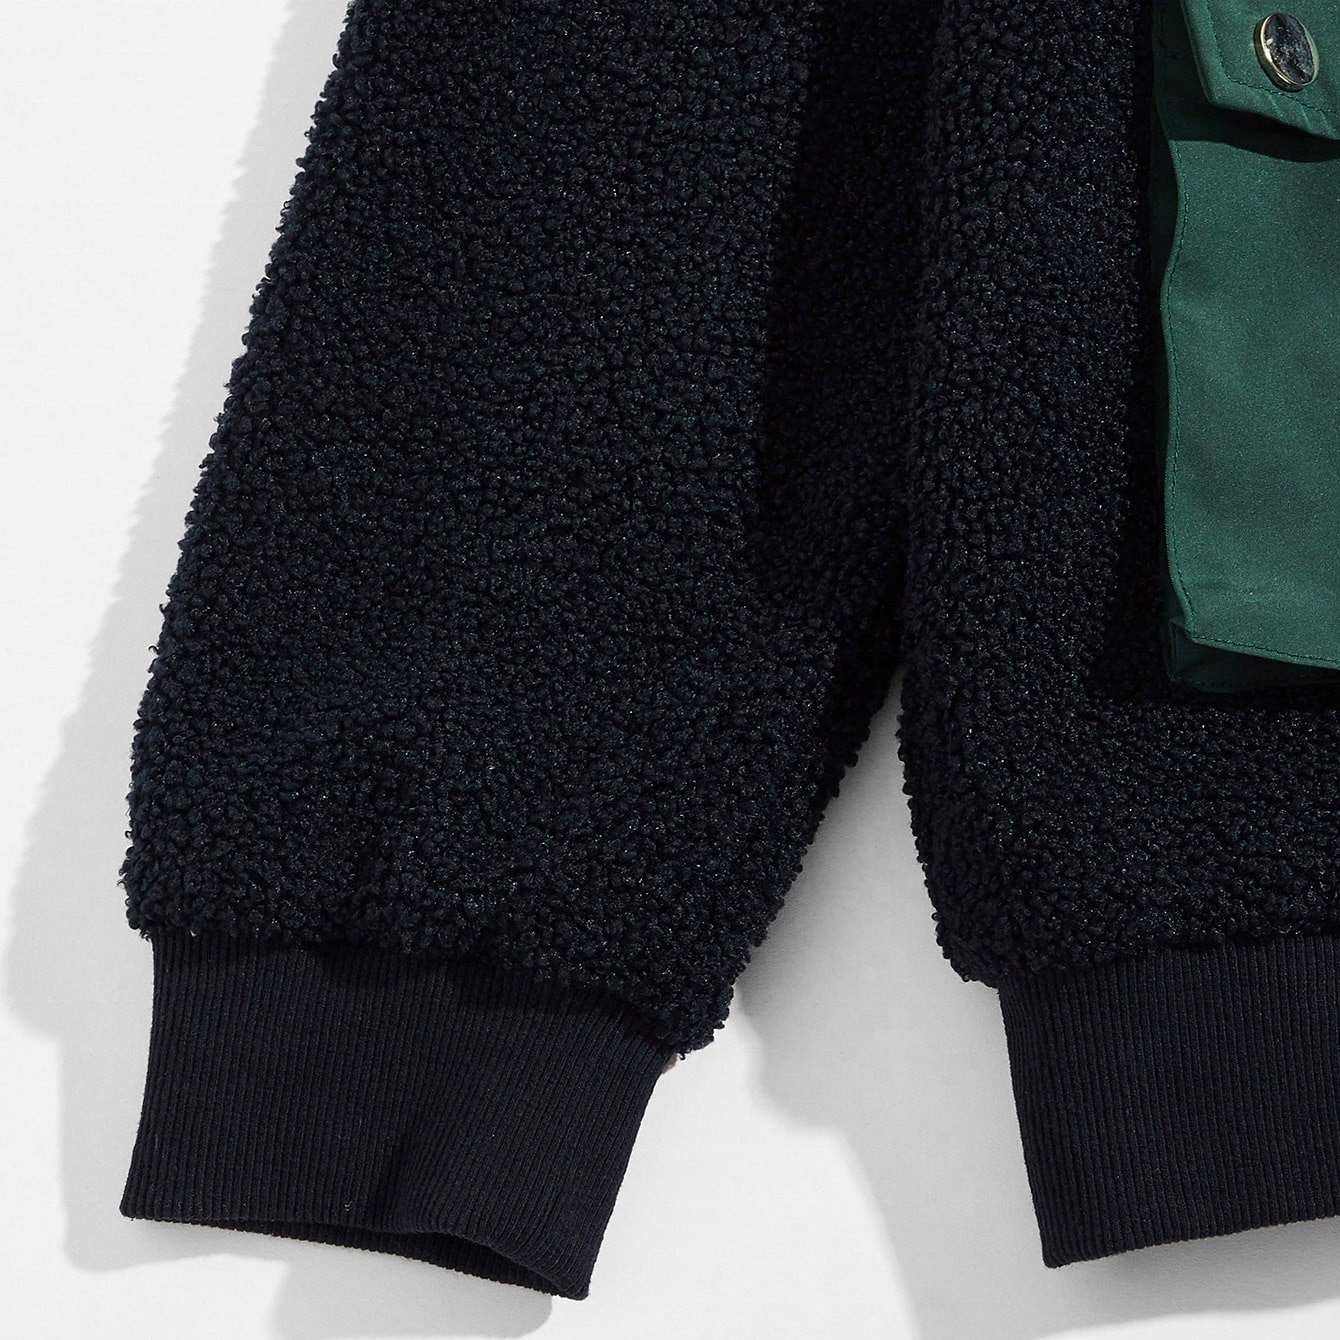 OEM fabricant personnalisé vêtements pour hommes polaire coton demi fermeture éclair vestes à capuche patchwork pull sweat avec de grandes poches cargo